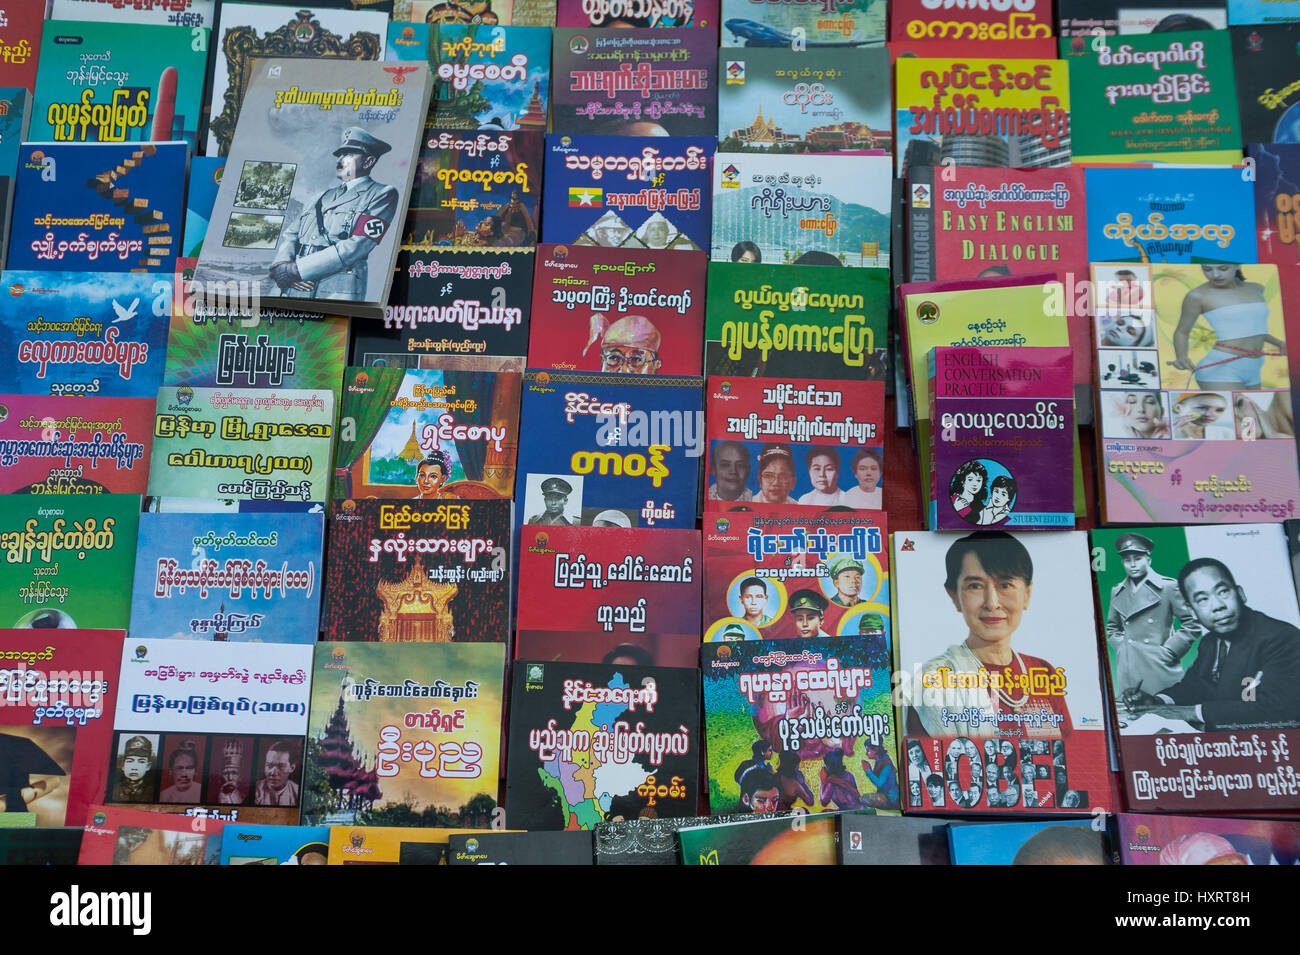 27.01.2017, Yangon, Republik der Union von Myanmar, Asien - die Anzeige der Buchhändler in der Mitte der ehemaligen Hauptstadt. Stockfoto